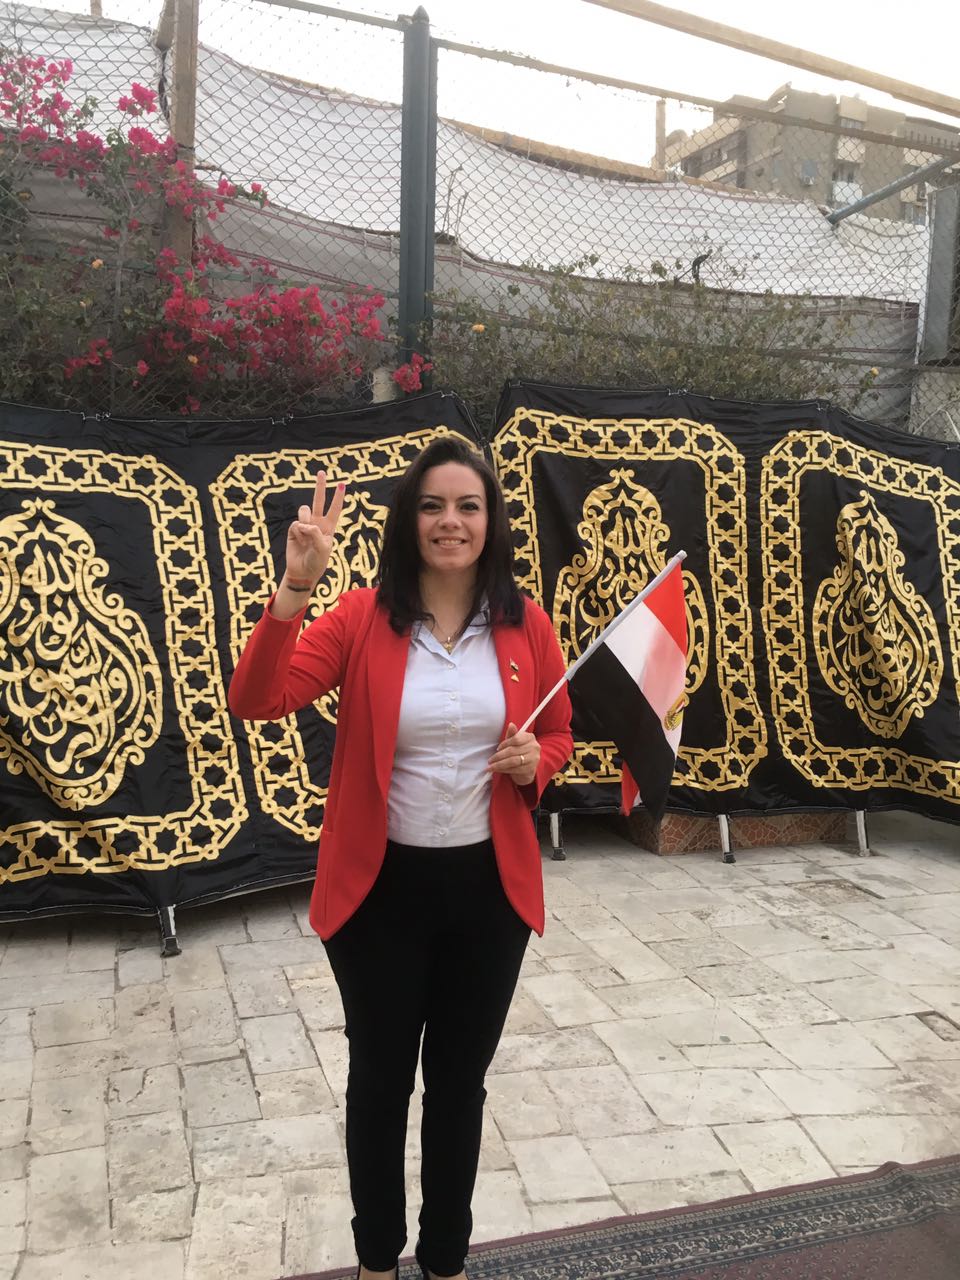 النائبة سيلفيا نبيل عضو مجلس النواب